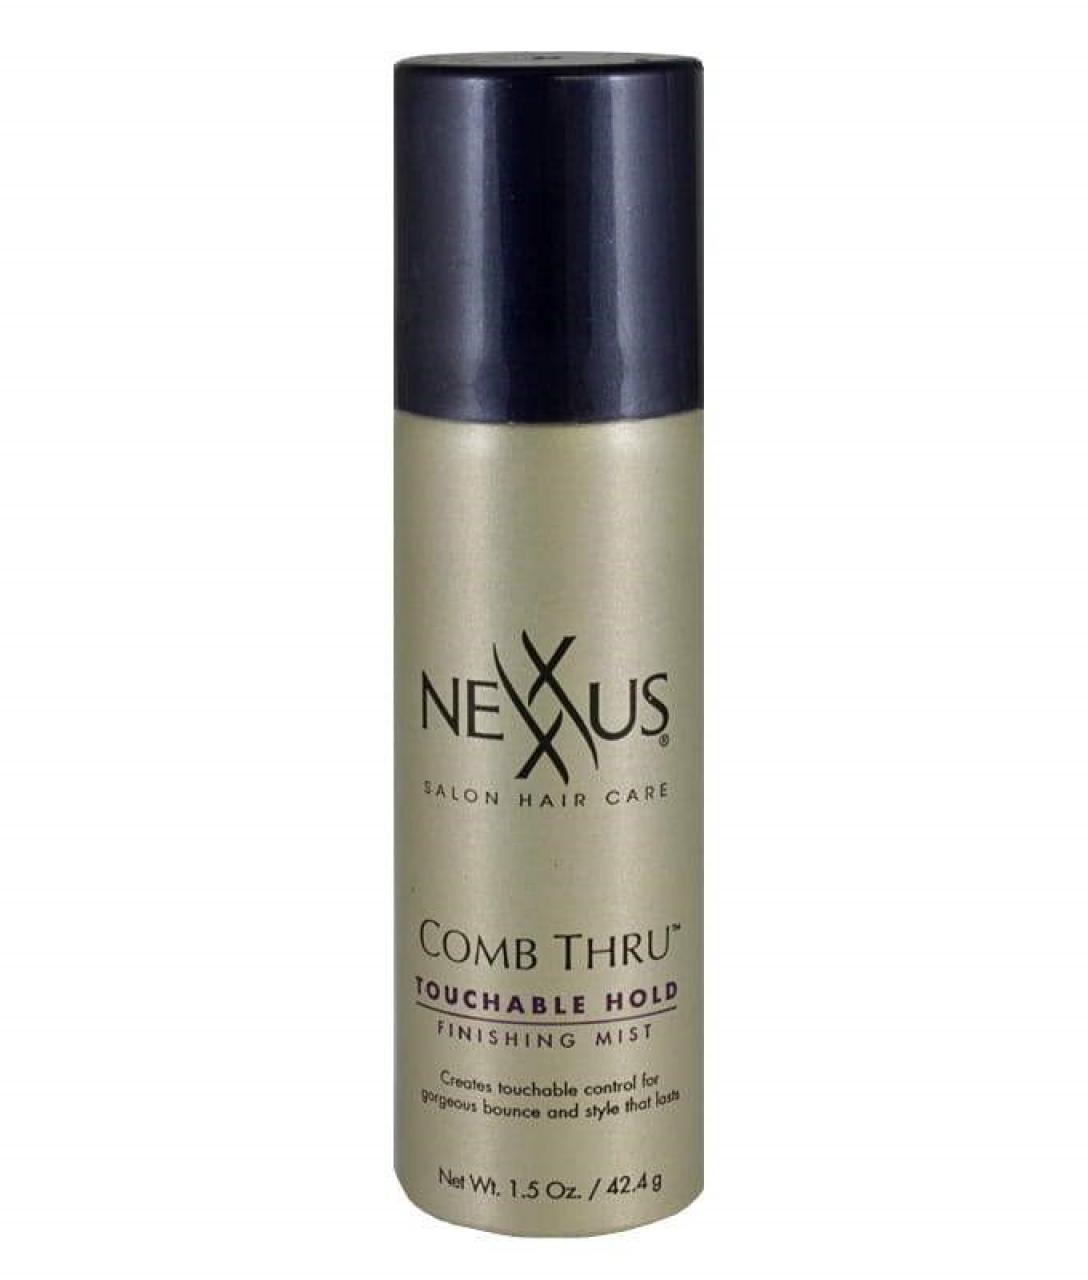 Nexxus comb thru